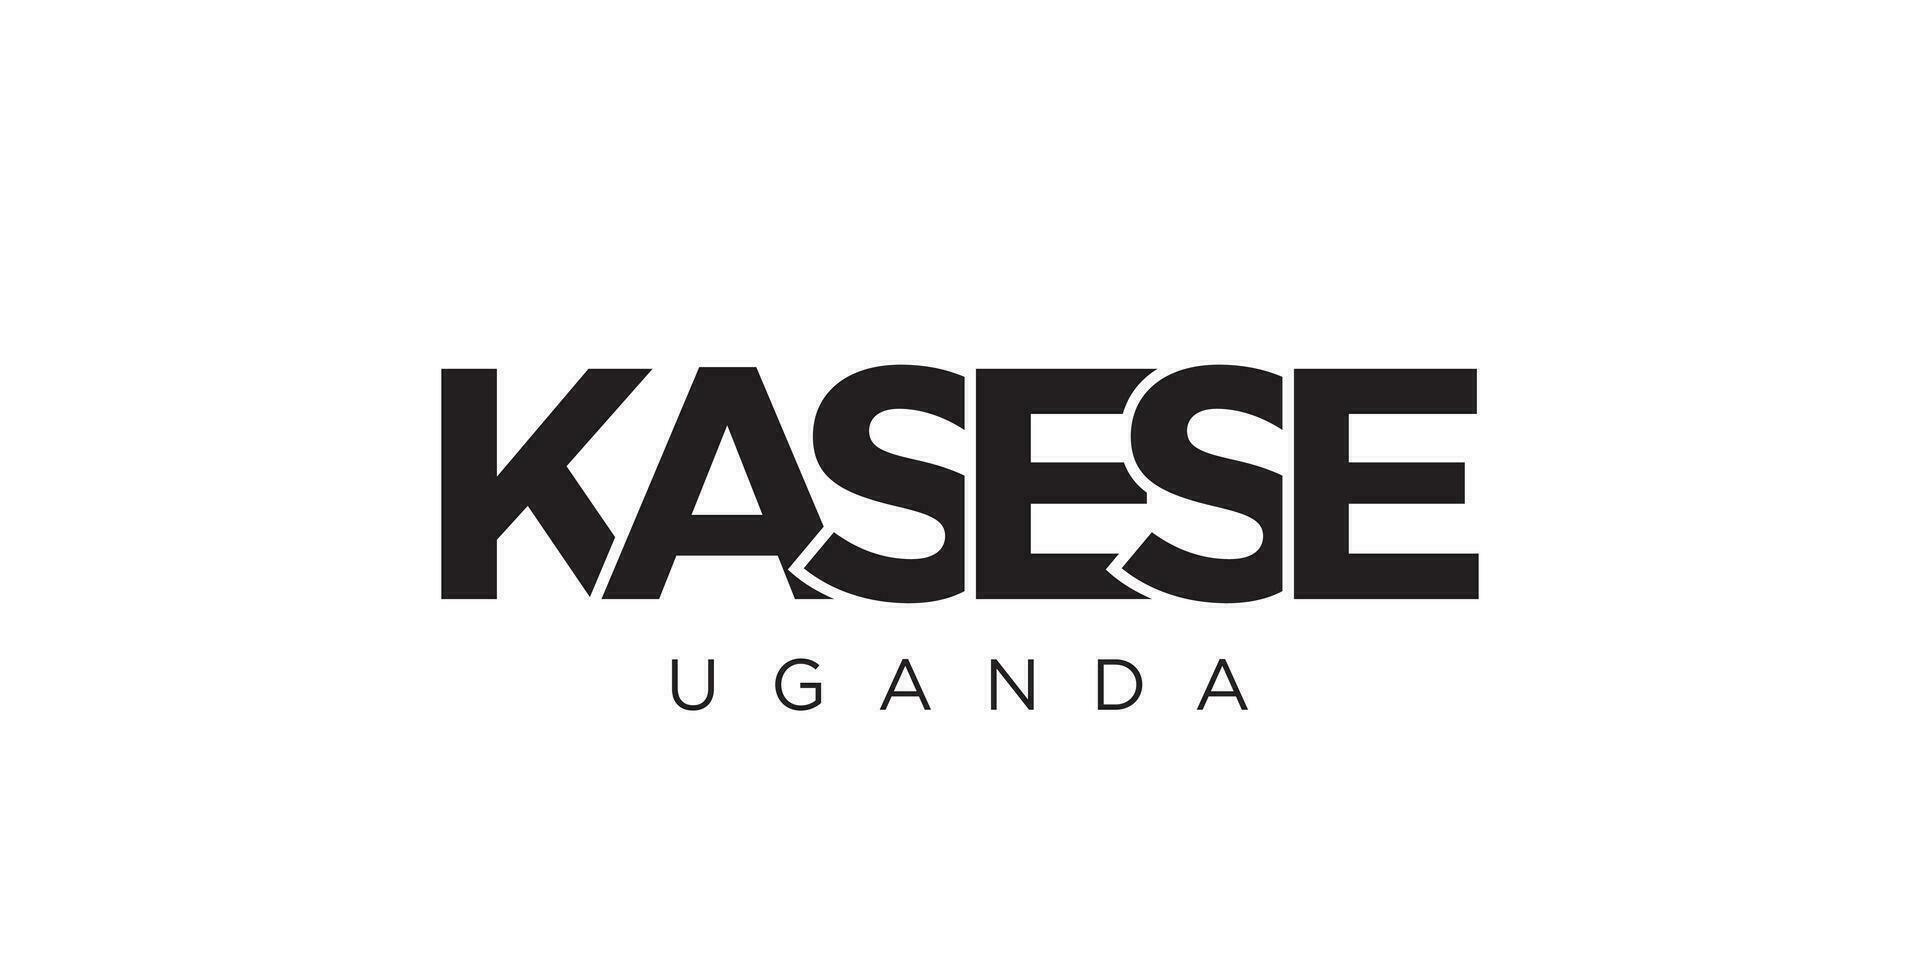 Kasese dans le Ouganda emblème. le conception Caractéristiques une géométrique style, vecteur illustration avec audacieux typographie dans une moderne Police de caractère. le graphique slogan caractères.